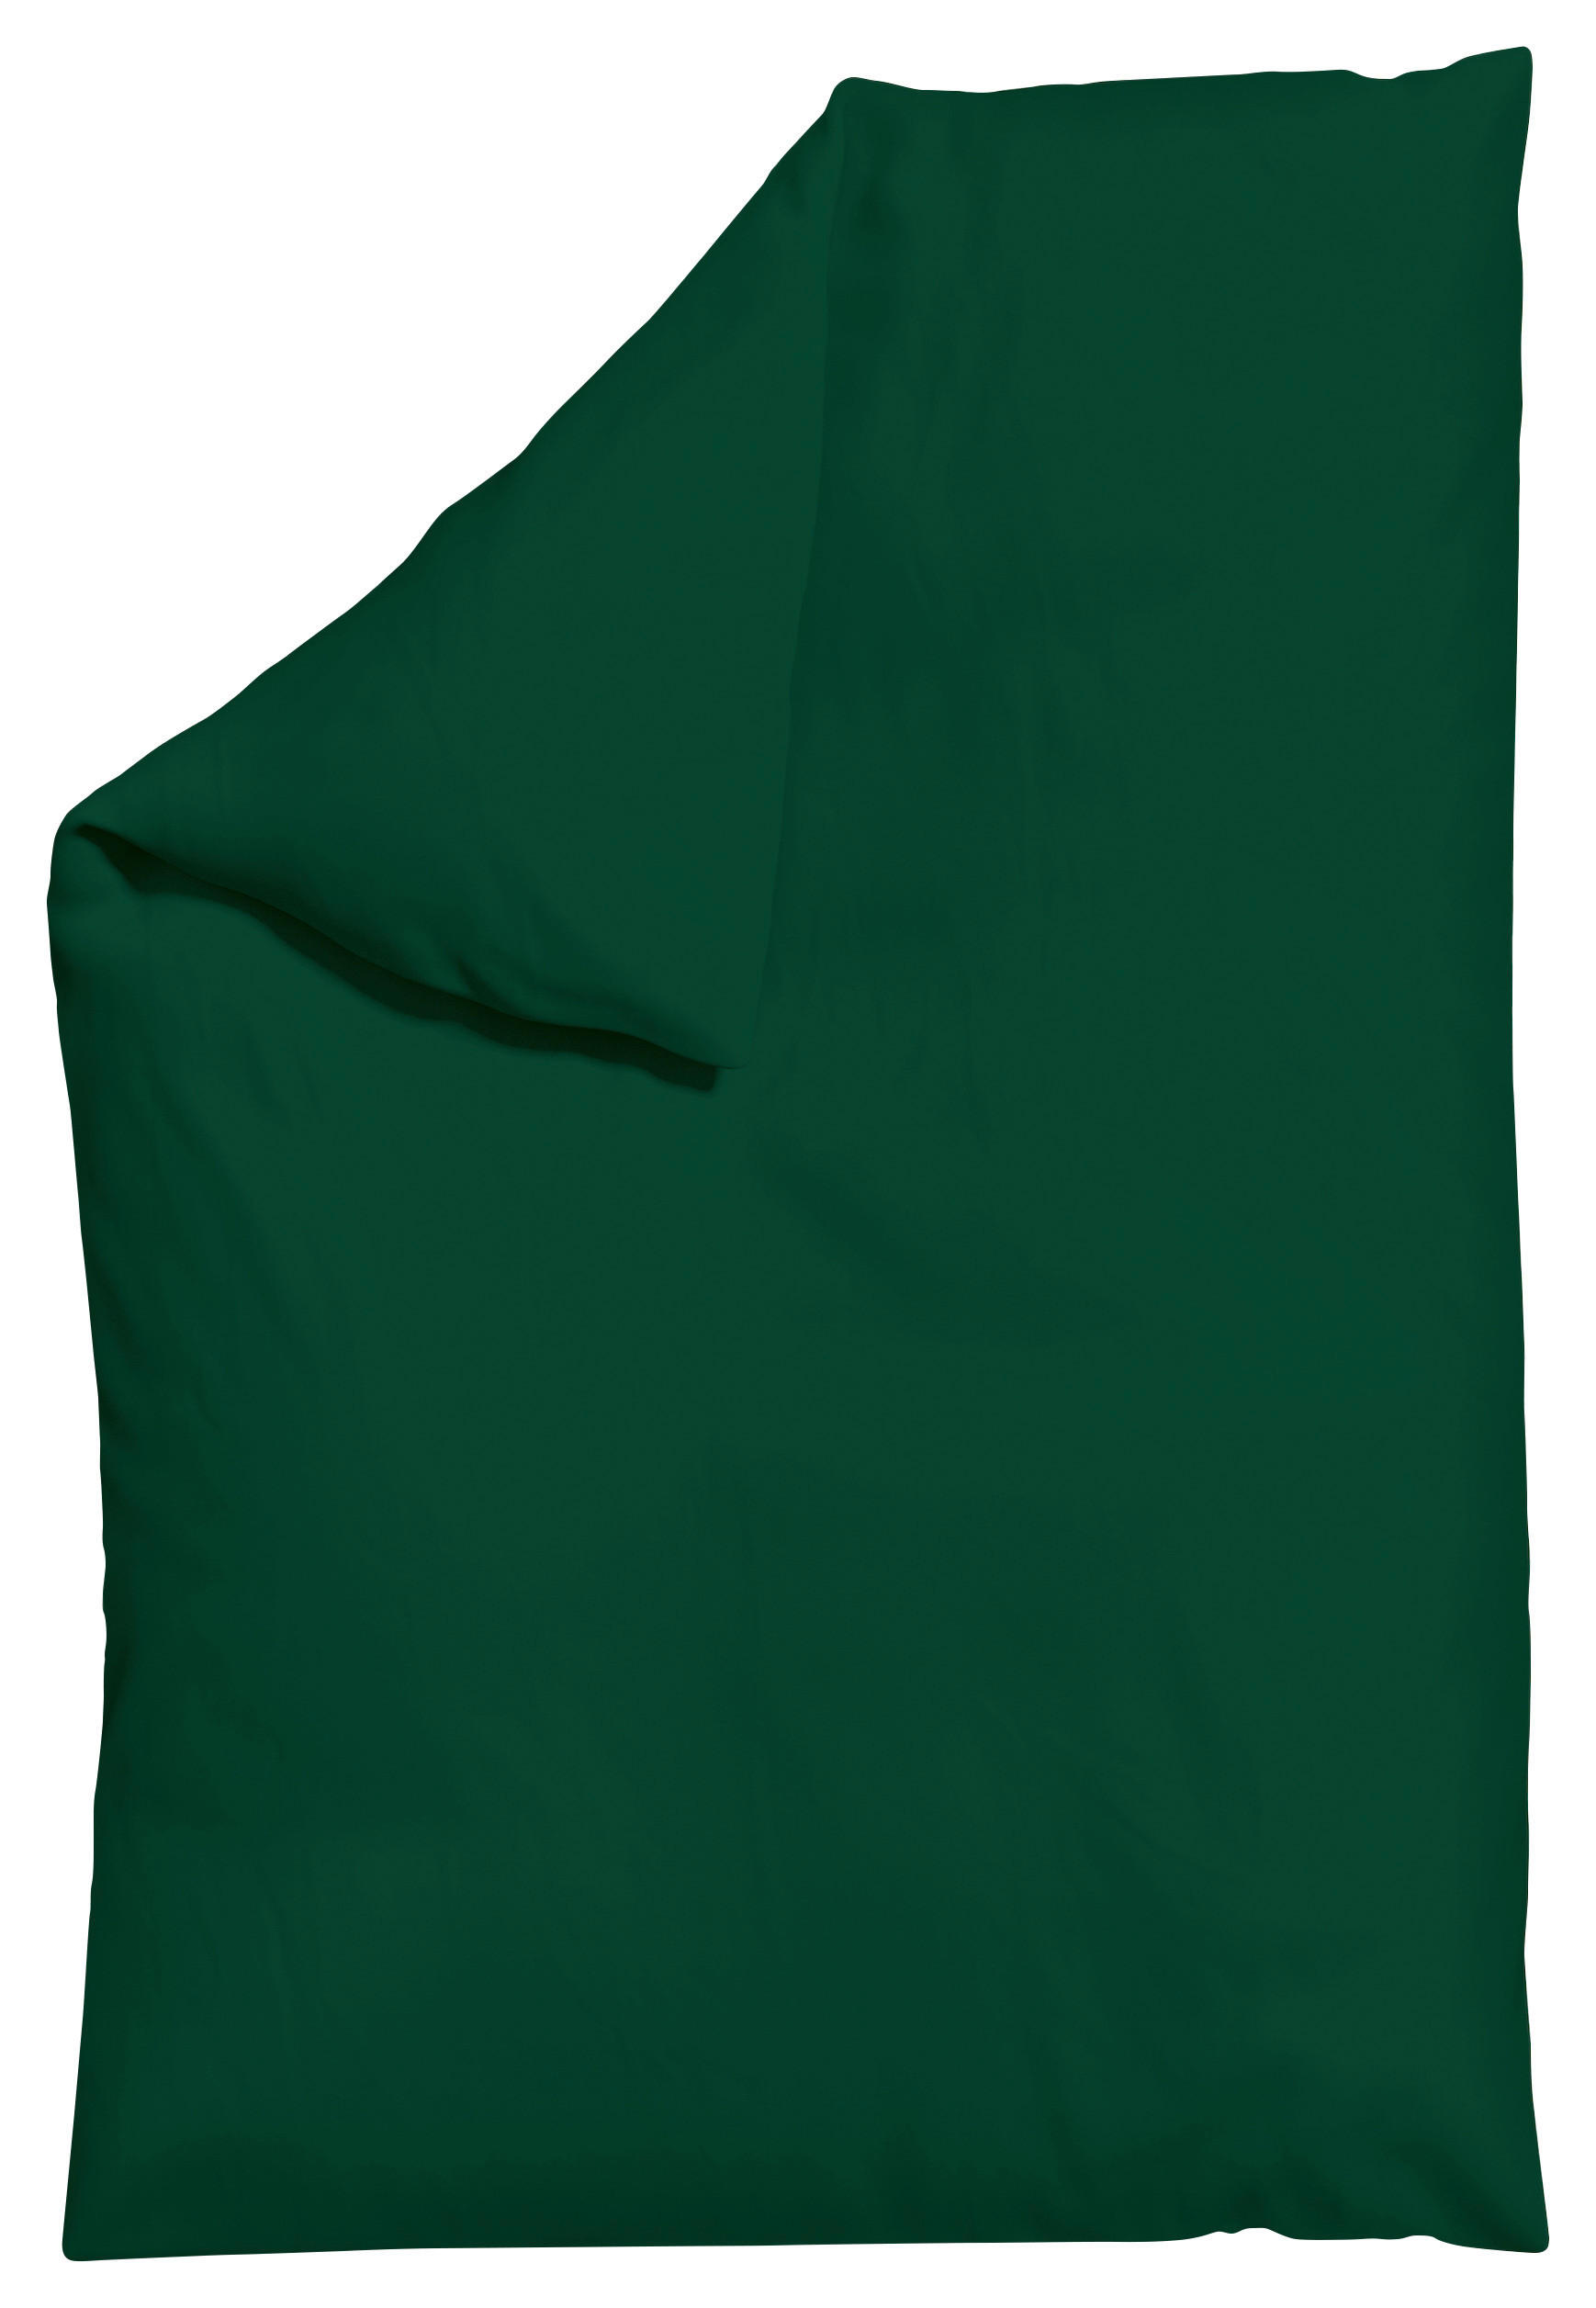 BETTDECKENBEZUG KNITTED JERSEY Jersey  - Dunkelgrün, Basics, Textil (135-140/200cm) - Schlafgut